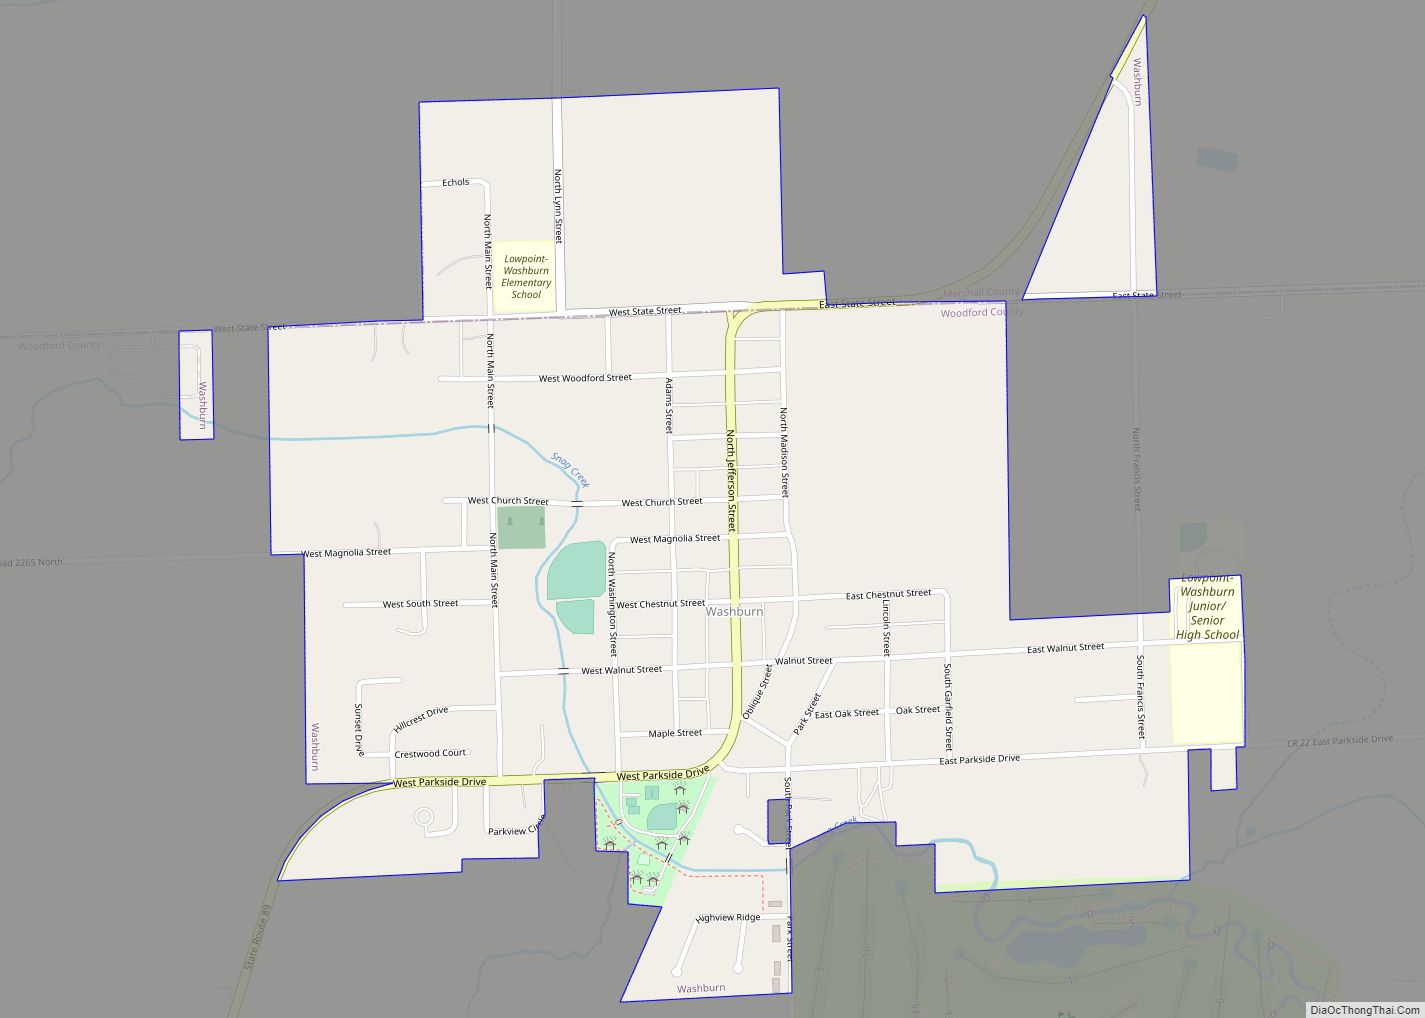 Map of Washburn village, Illinois